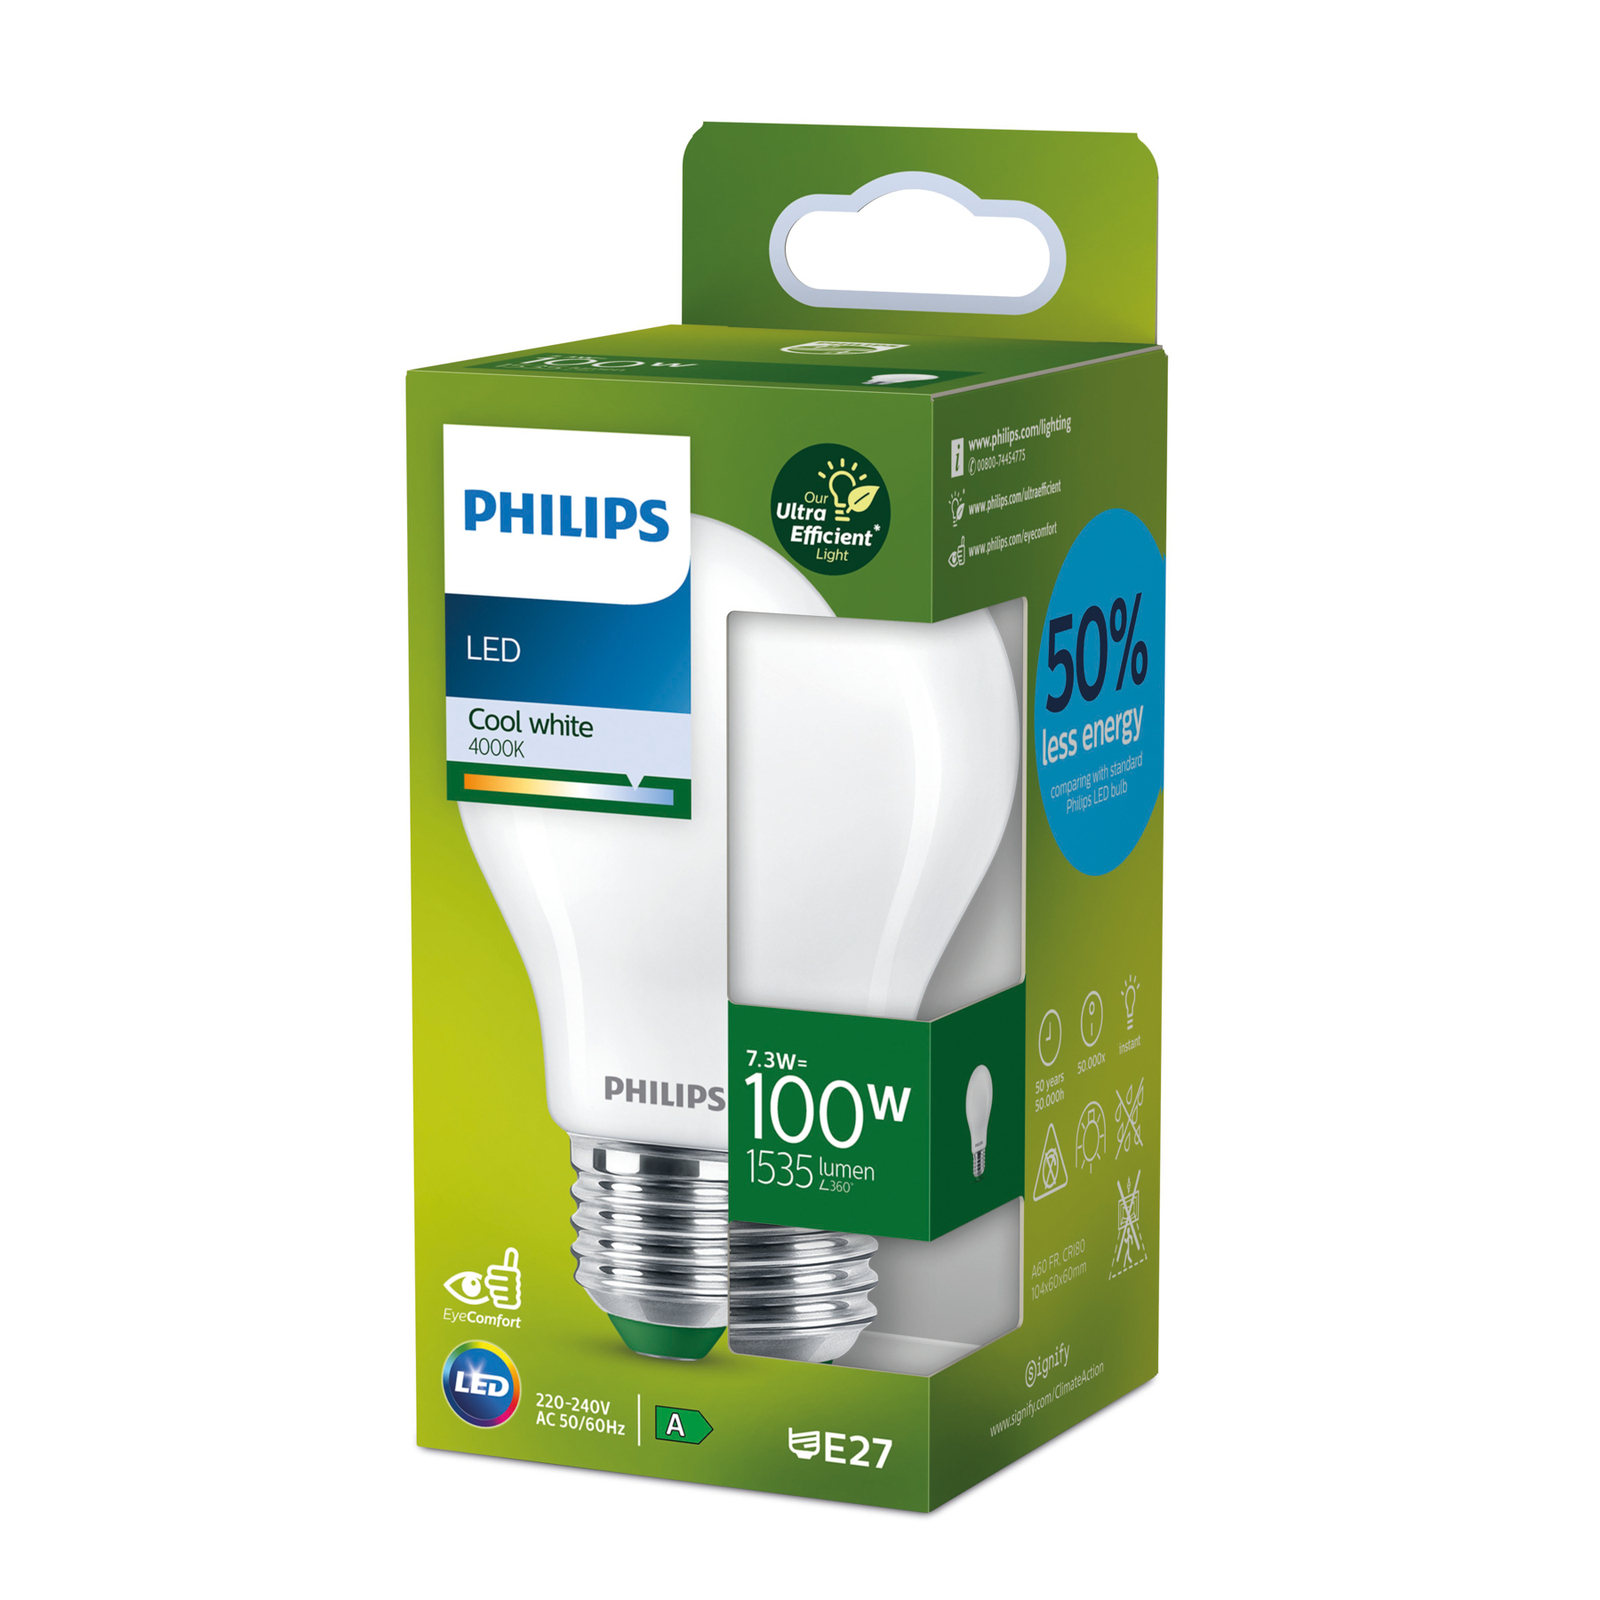 Philips E27 LED bulb A60 7.3W 1535lm 4,000K matt